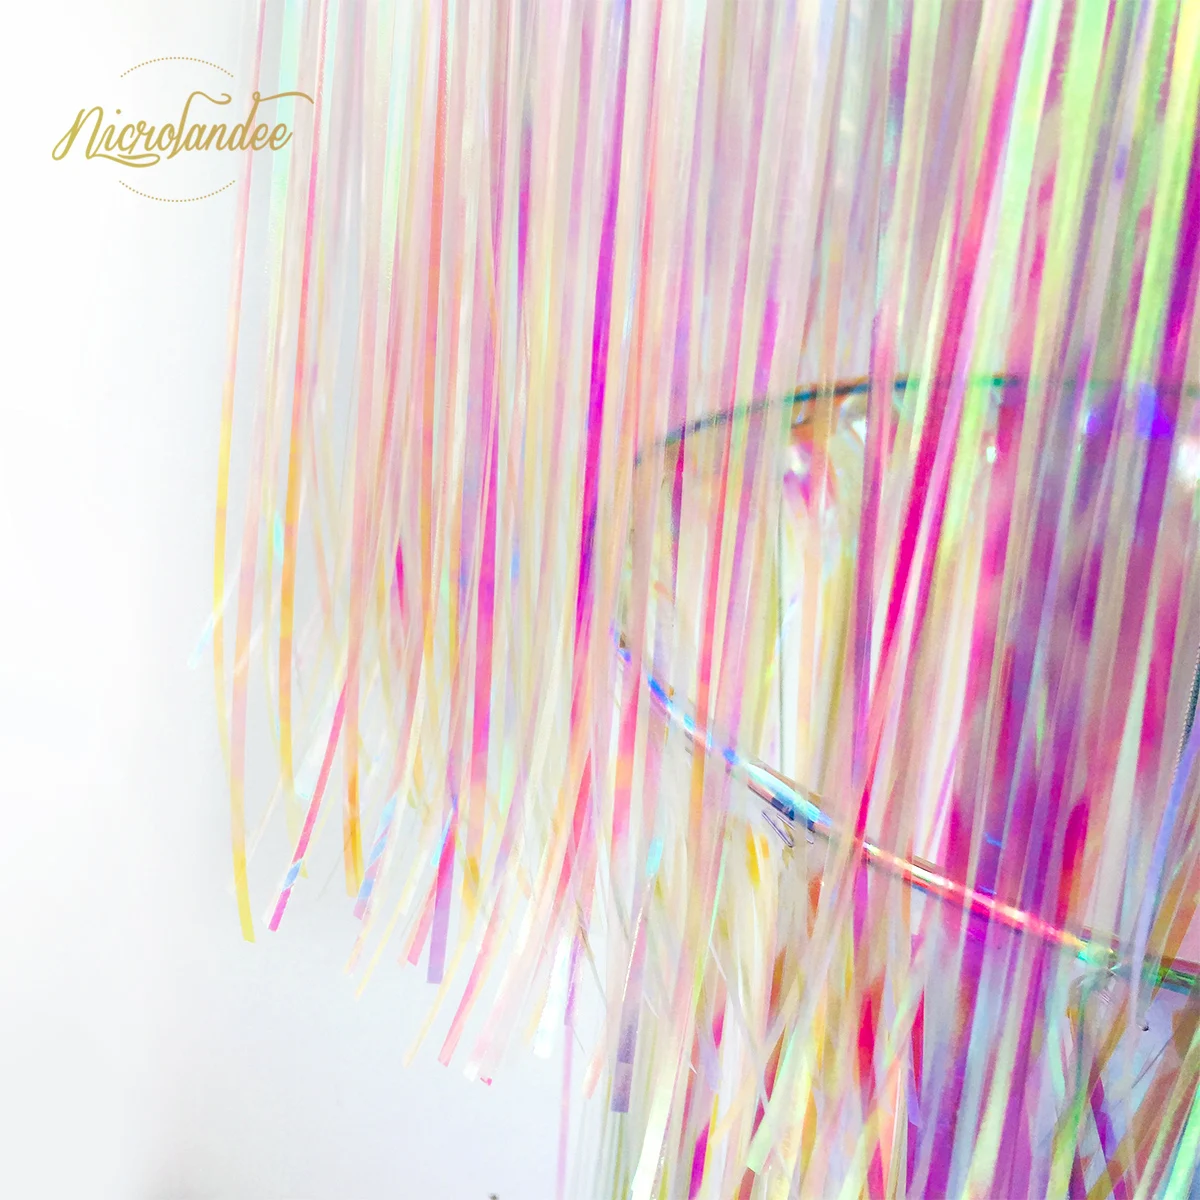 NICROLANDEE 3-capa Iridiscente arco iris de papel de Aluminio lámpara de Araña Cortina de Lluvia Colgante Impresionante Baile de Decoración de la Decoración del Partido 4